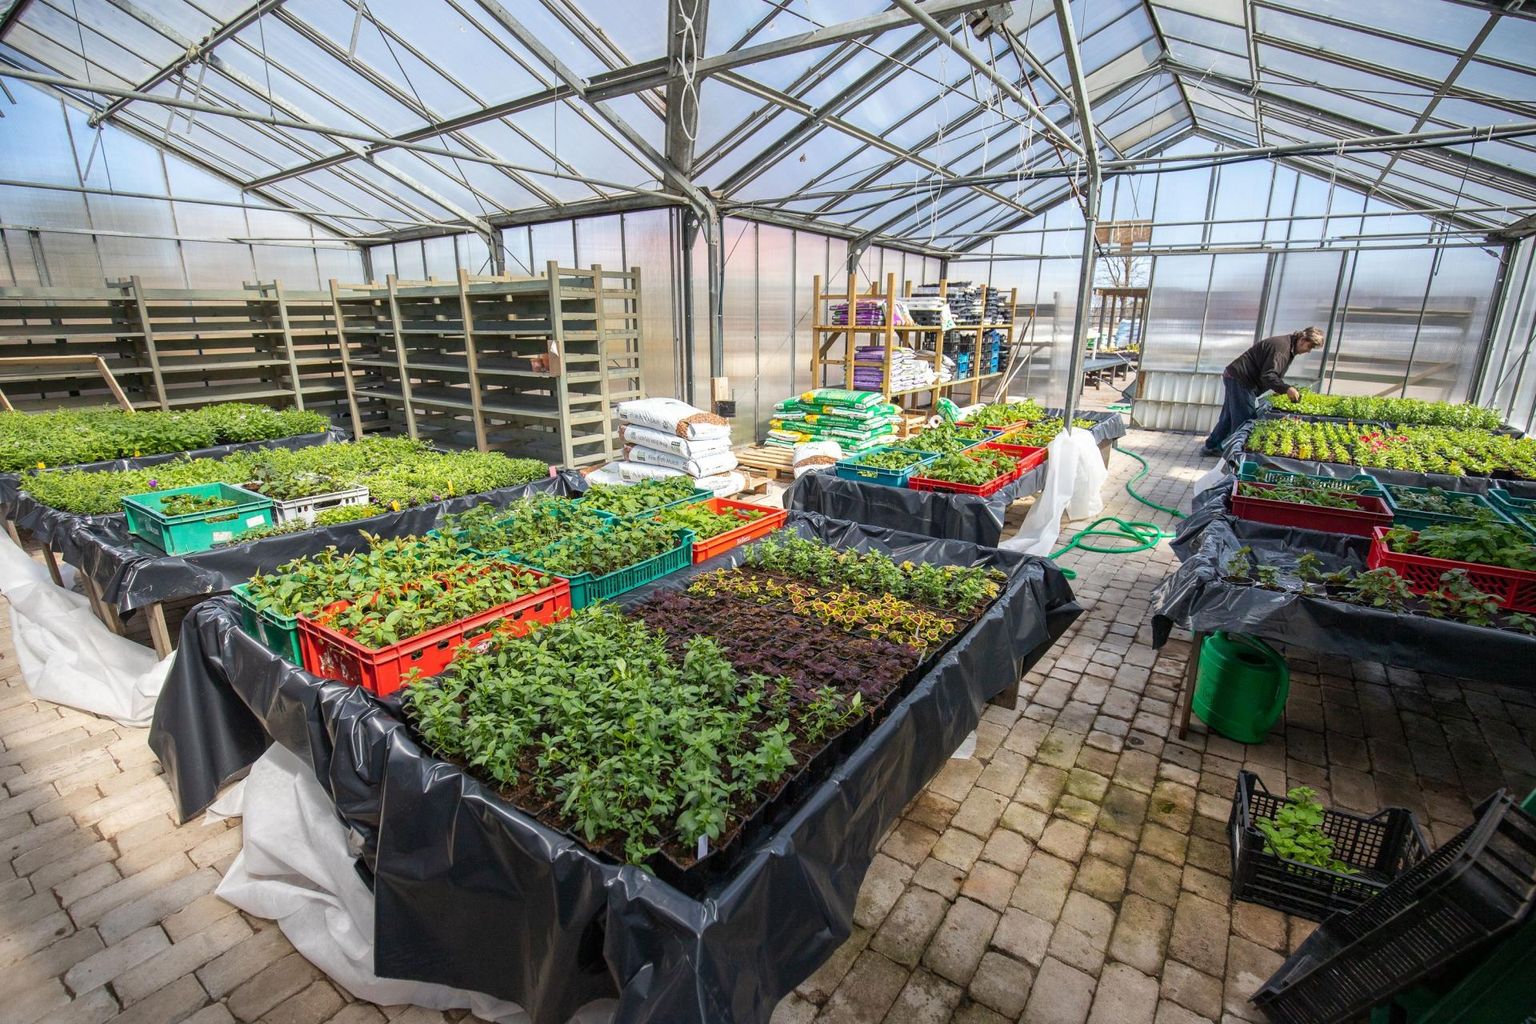 Kasvuhoone Nurga aiakeskuses saab taas täis kohalikke lille- ja köögiviljataimi, mida on võimalik oma aeda soetada.